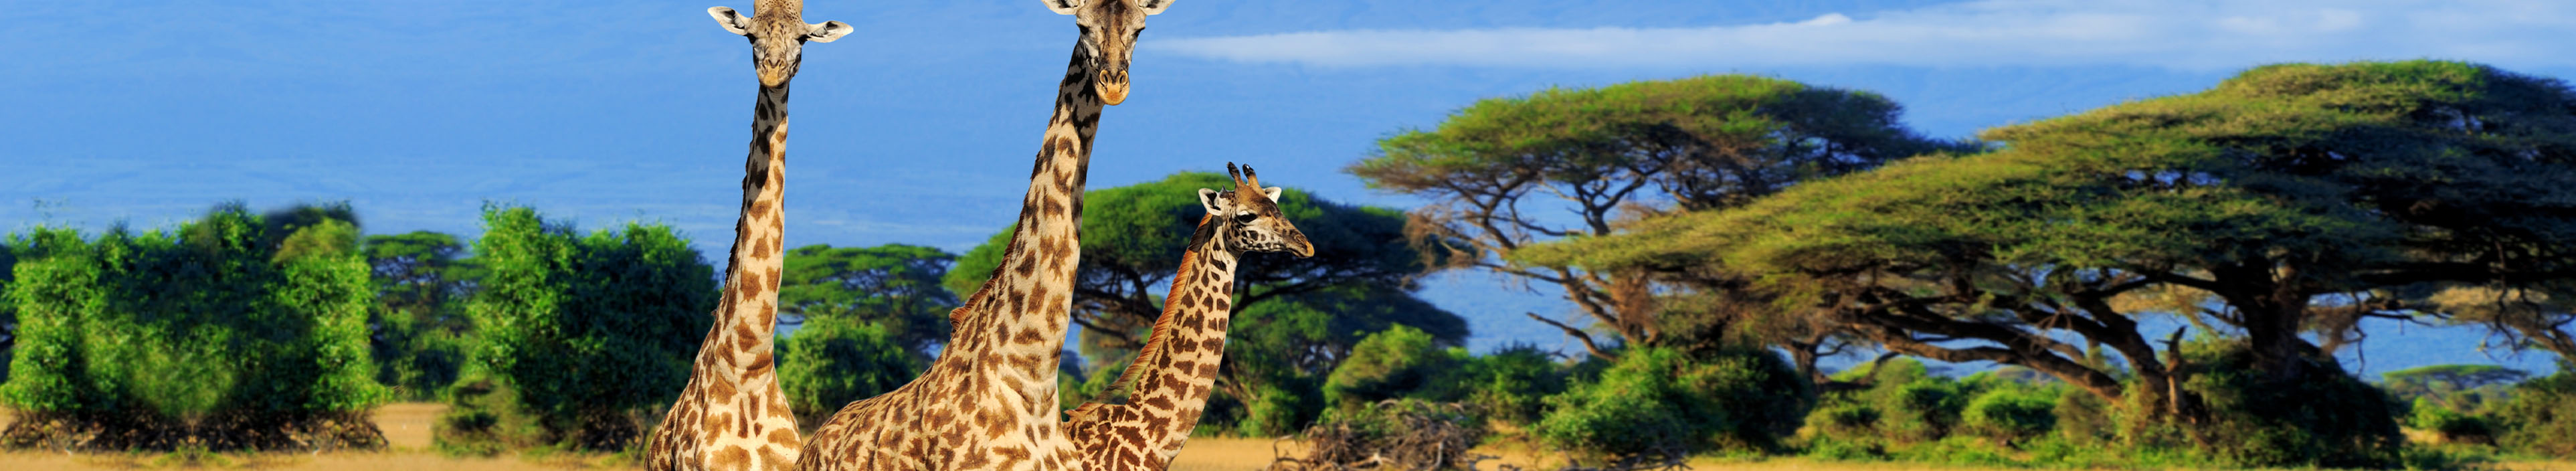 Drei Giraffen laufen durch einen Nationalpark in Kenia.